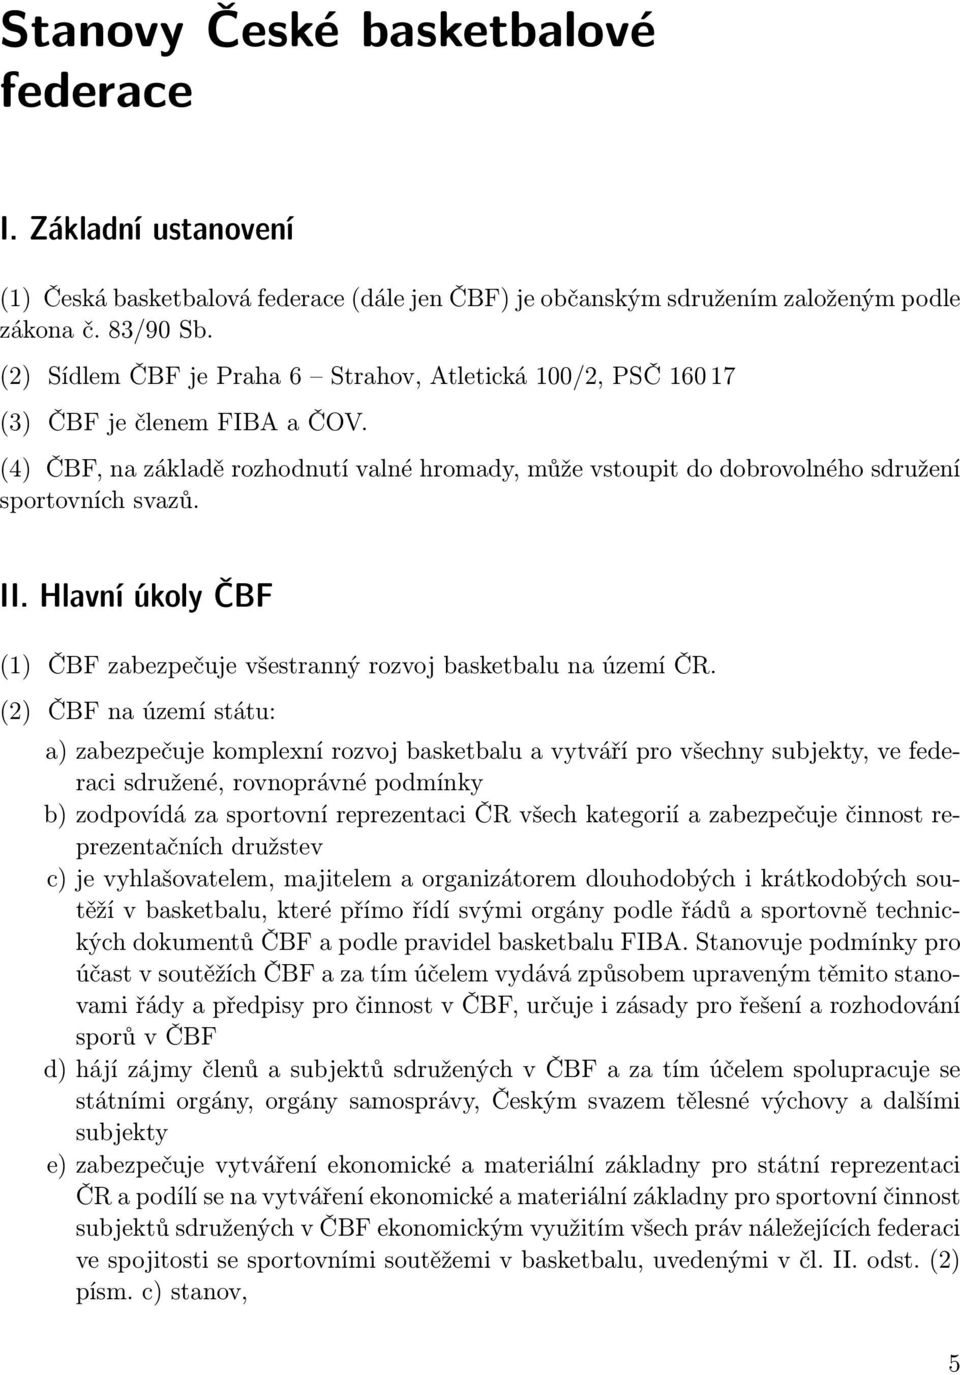 Hlavní úkoly ČBF (1) ČBF zabezpečuje všestranný rozvoj basketbalu na území ČR.